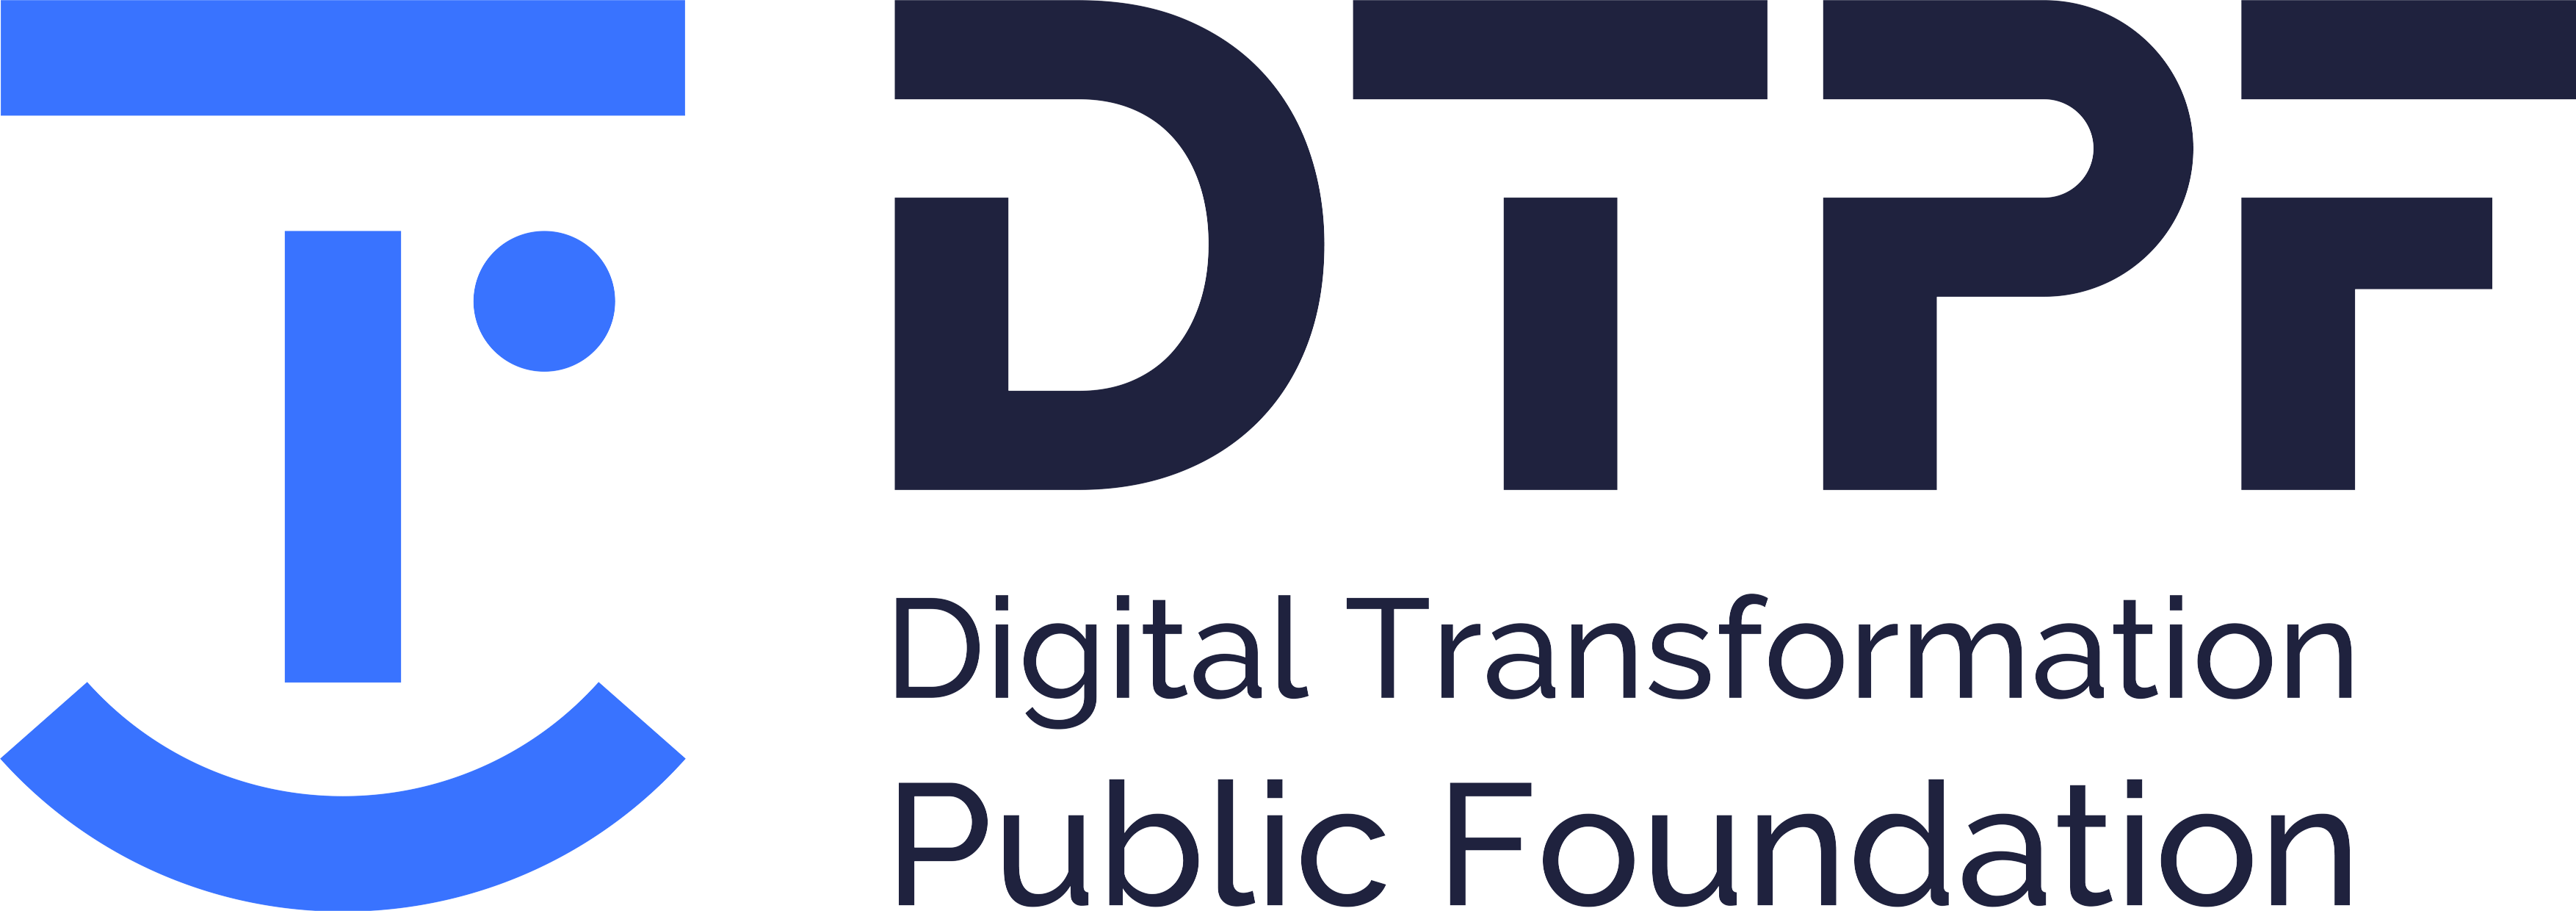 Digital Transformation Public Foundation